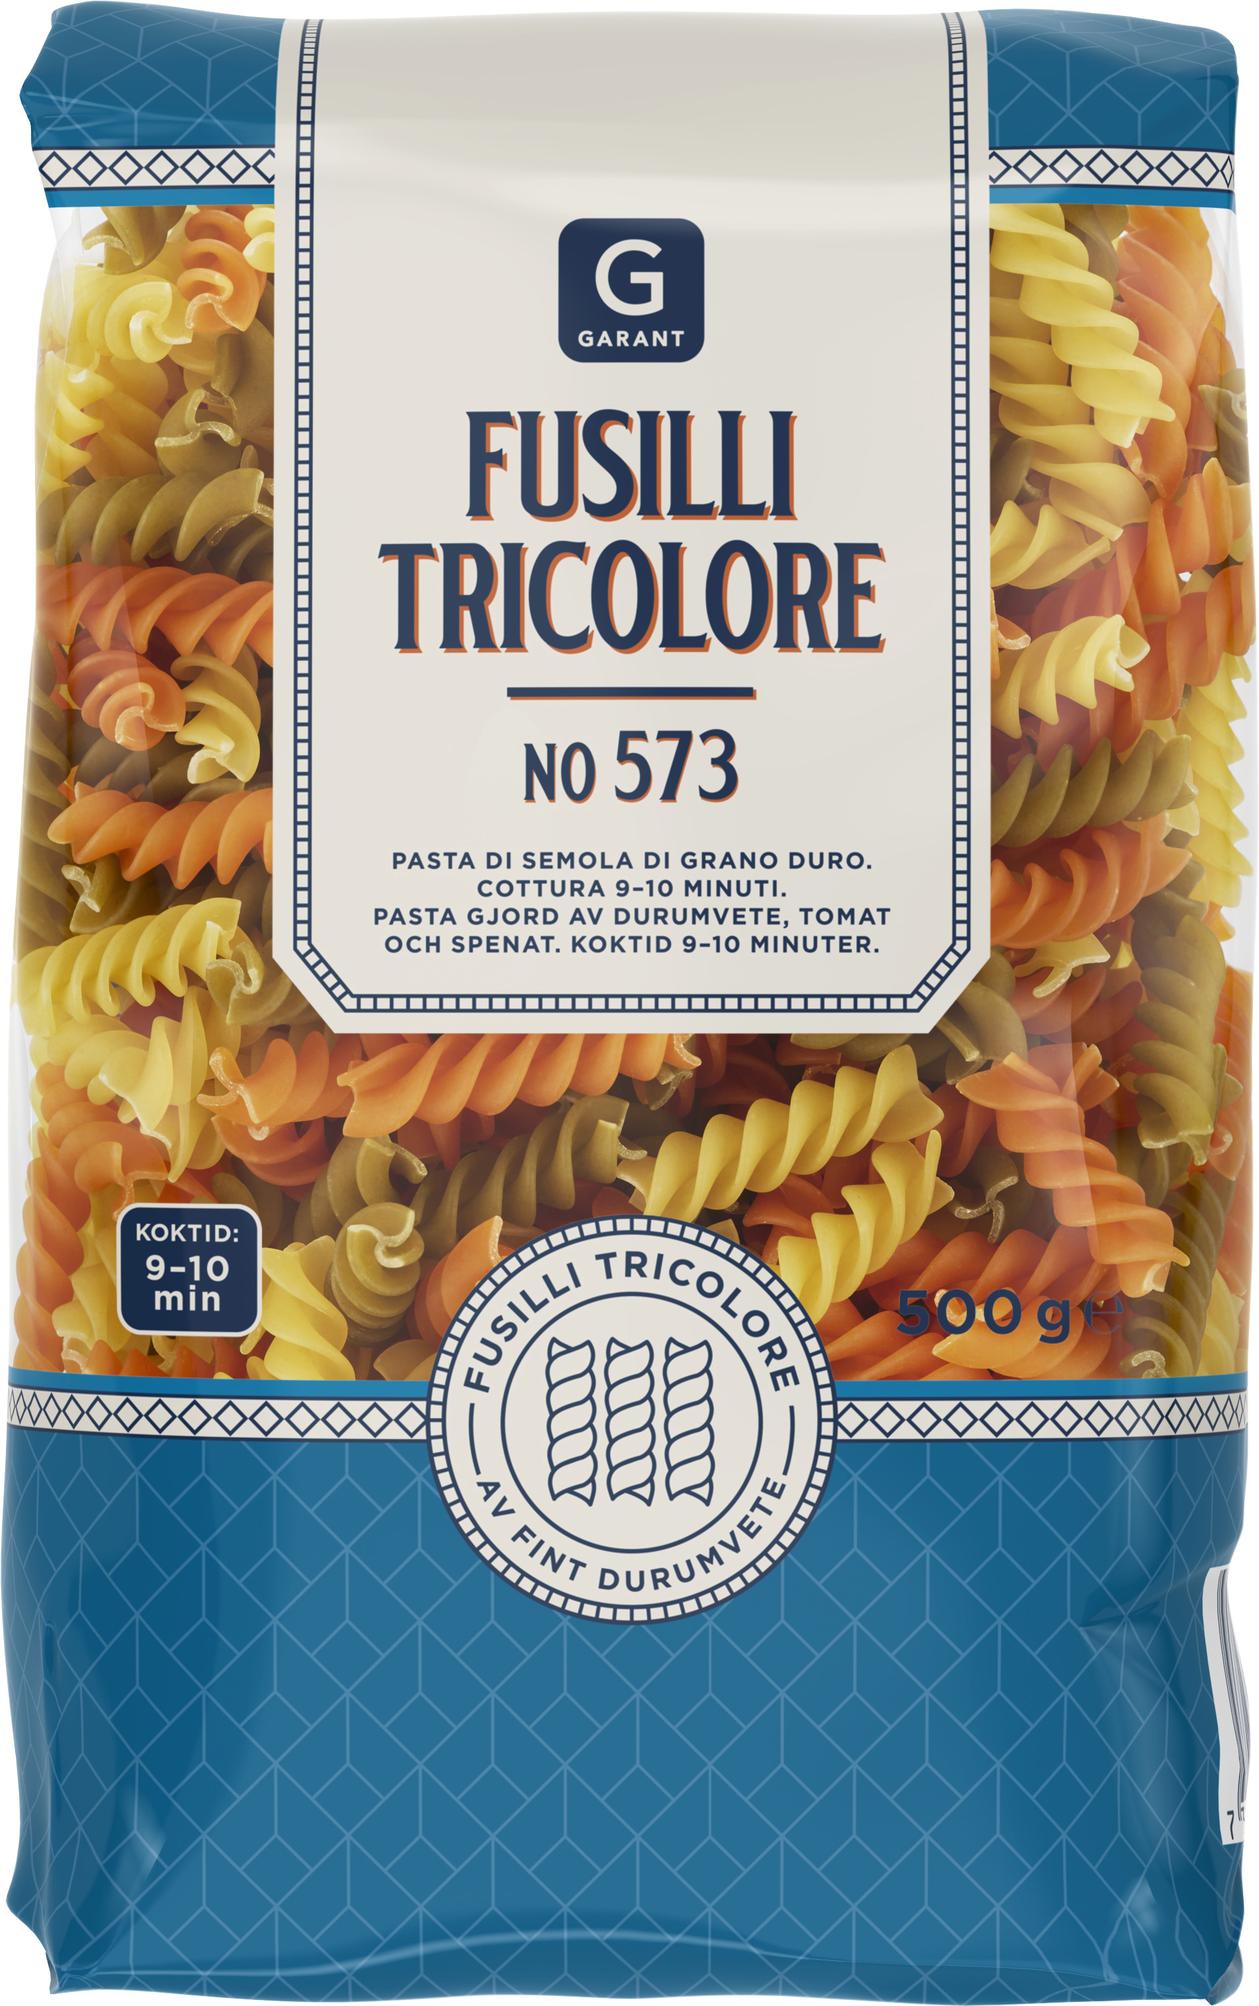 Pasta Fusilli Tricolore för 14,95 kr på City Gross